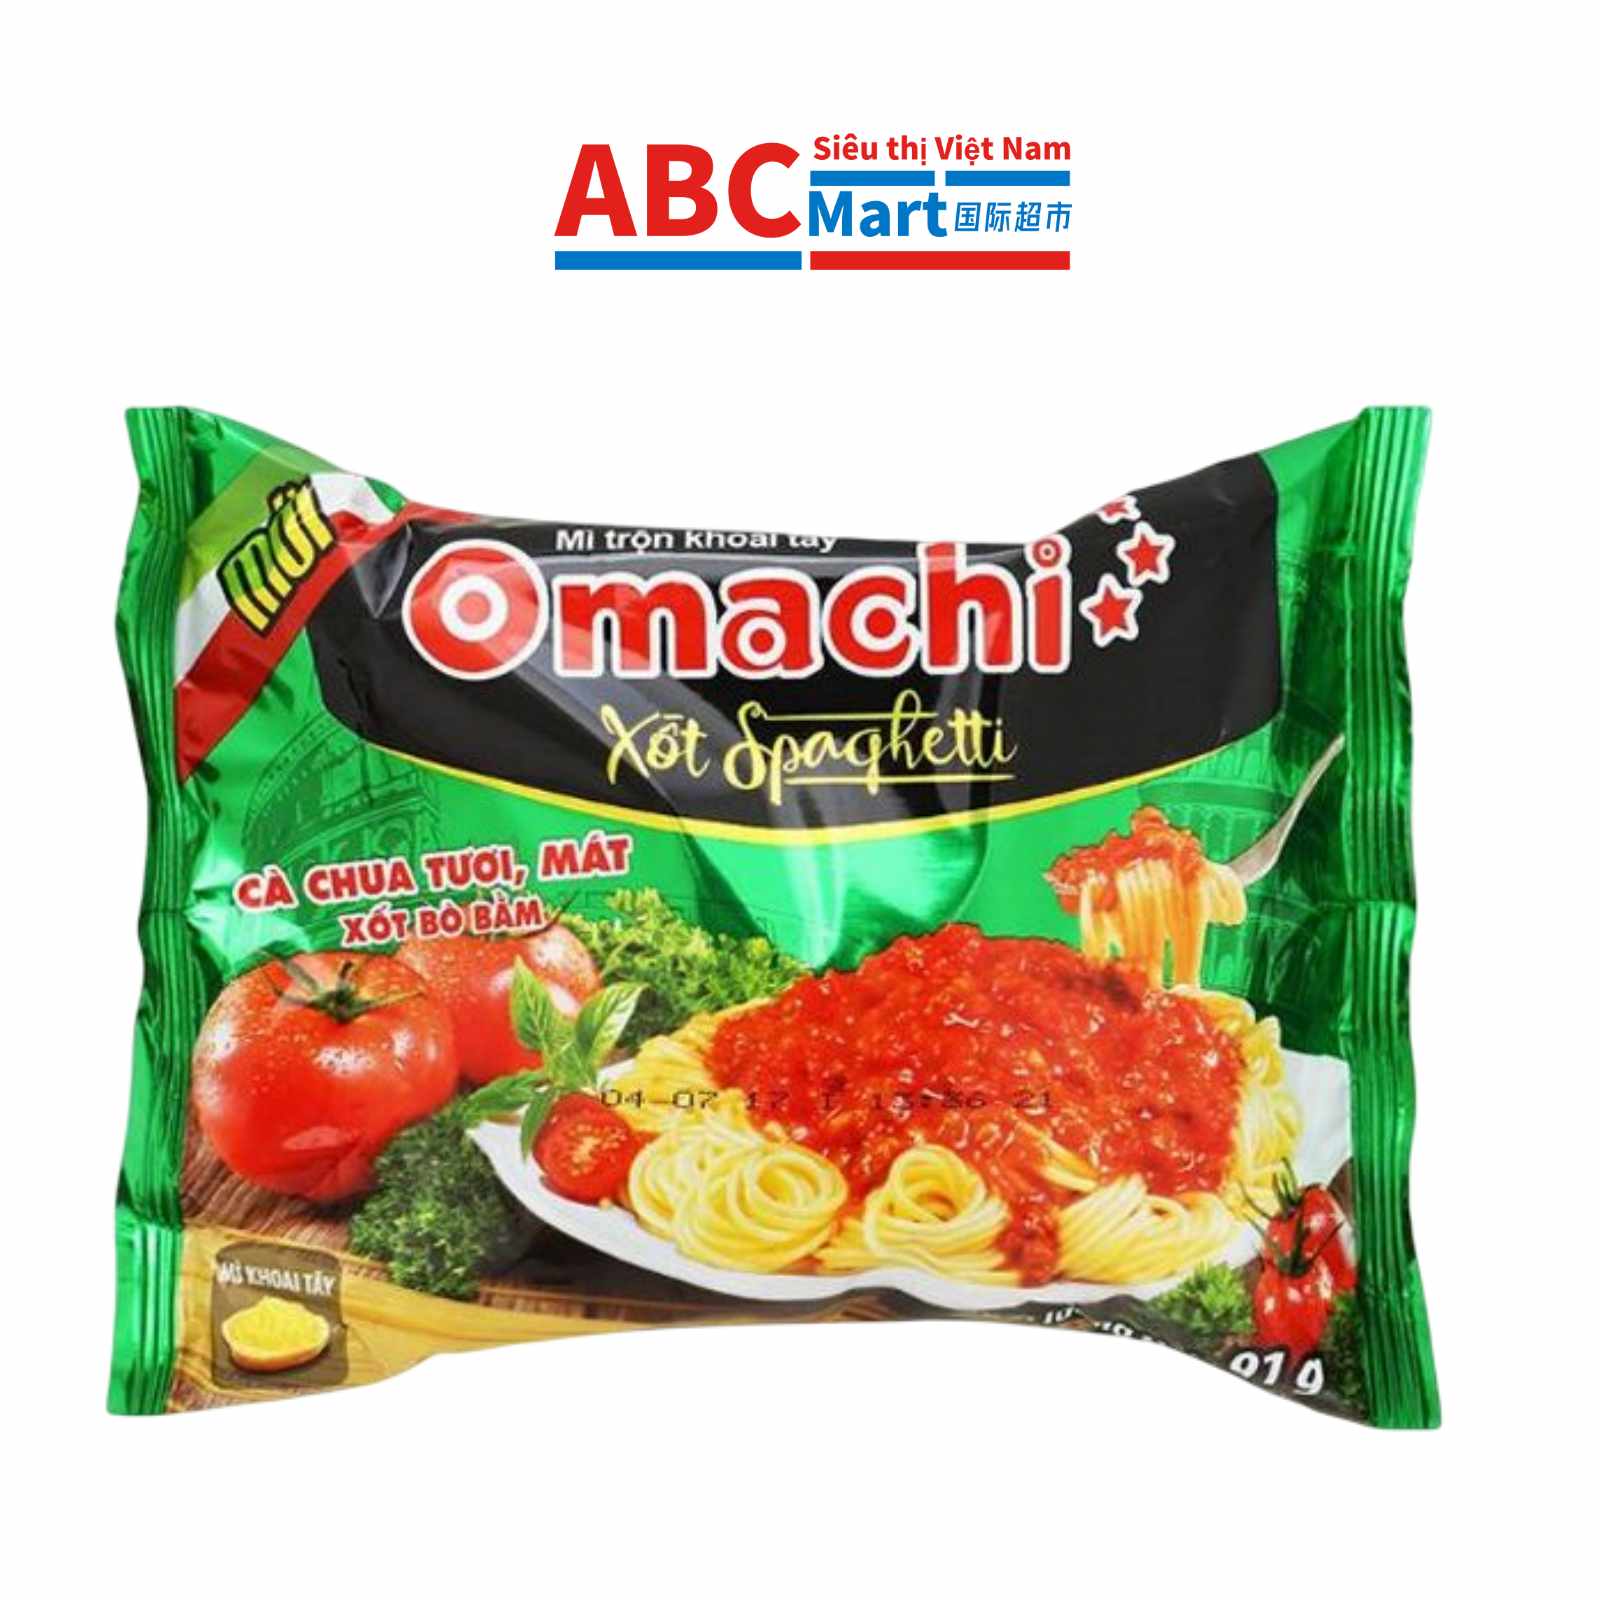 【Việt Nam-Mì trộn Omachi xốt Spaghetti gói 91g】 意大利面-ABCMart 国际超市